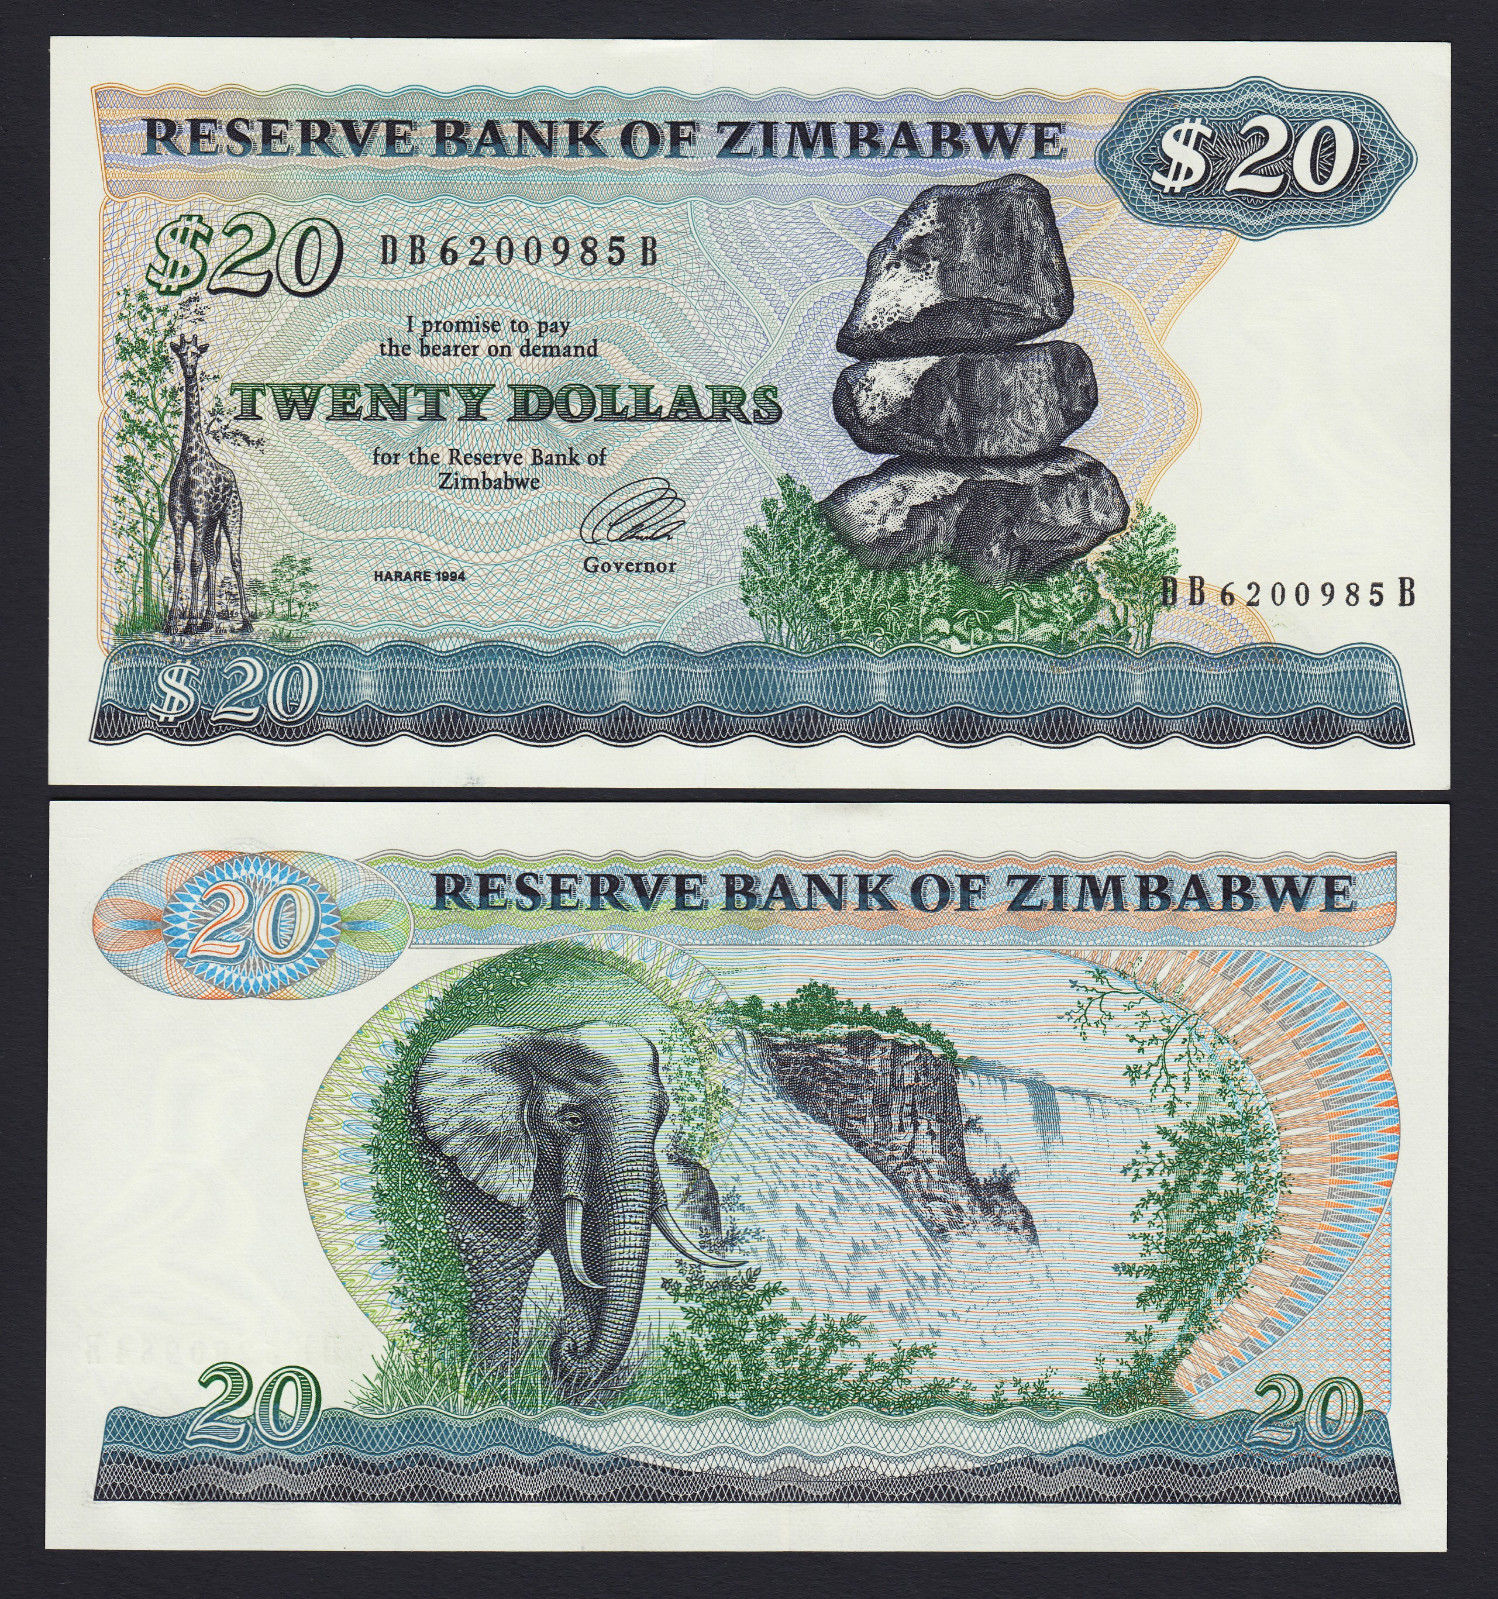 20 dollars Zimbabwe 1994